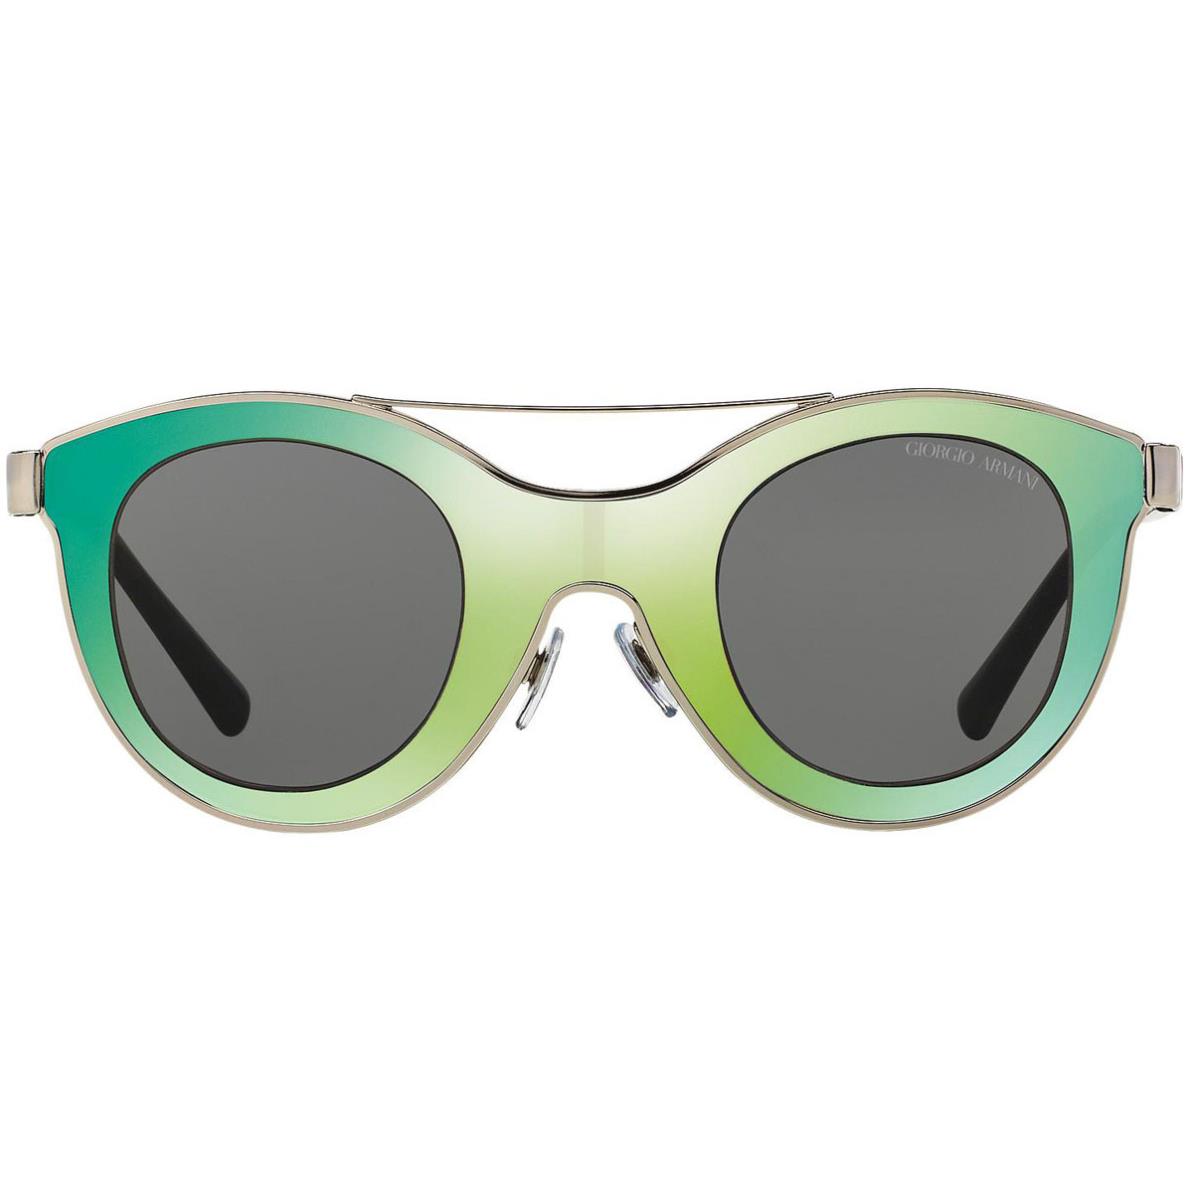 Giorgio Armani Sunglasses AR 6033-301587 Green Silver /grey 39mm